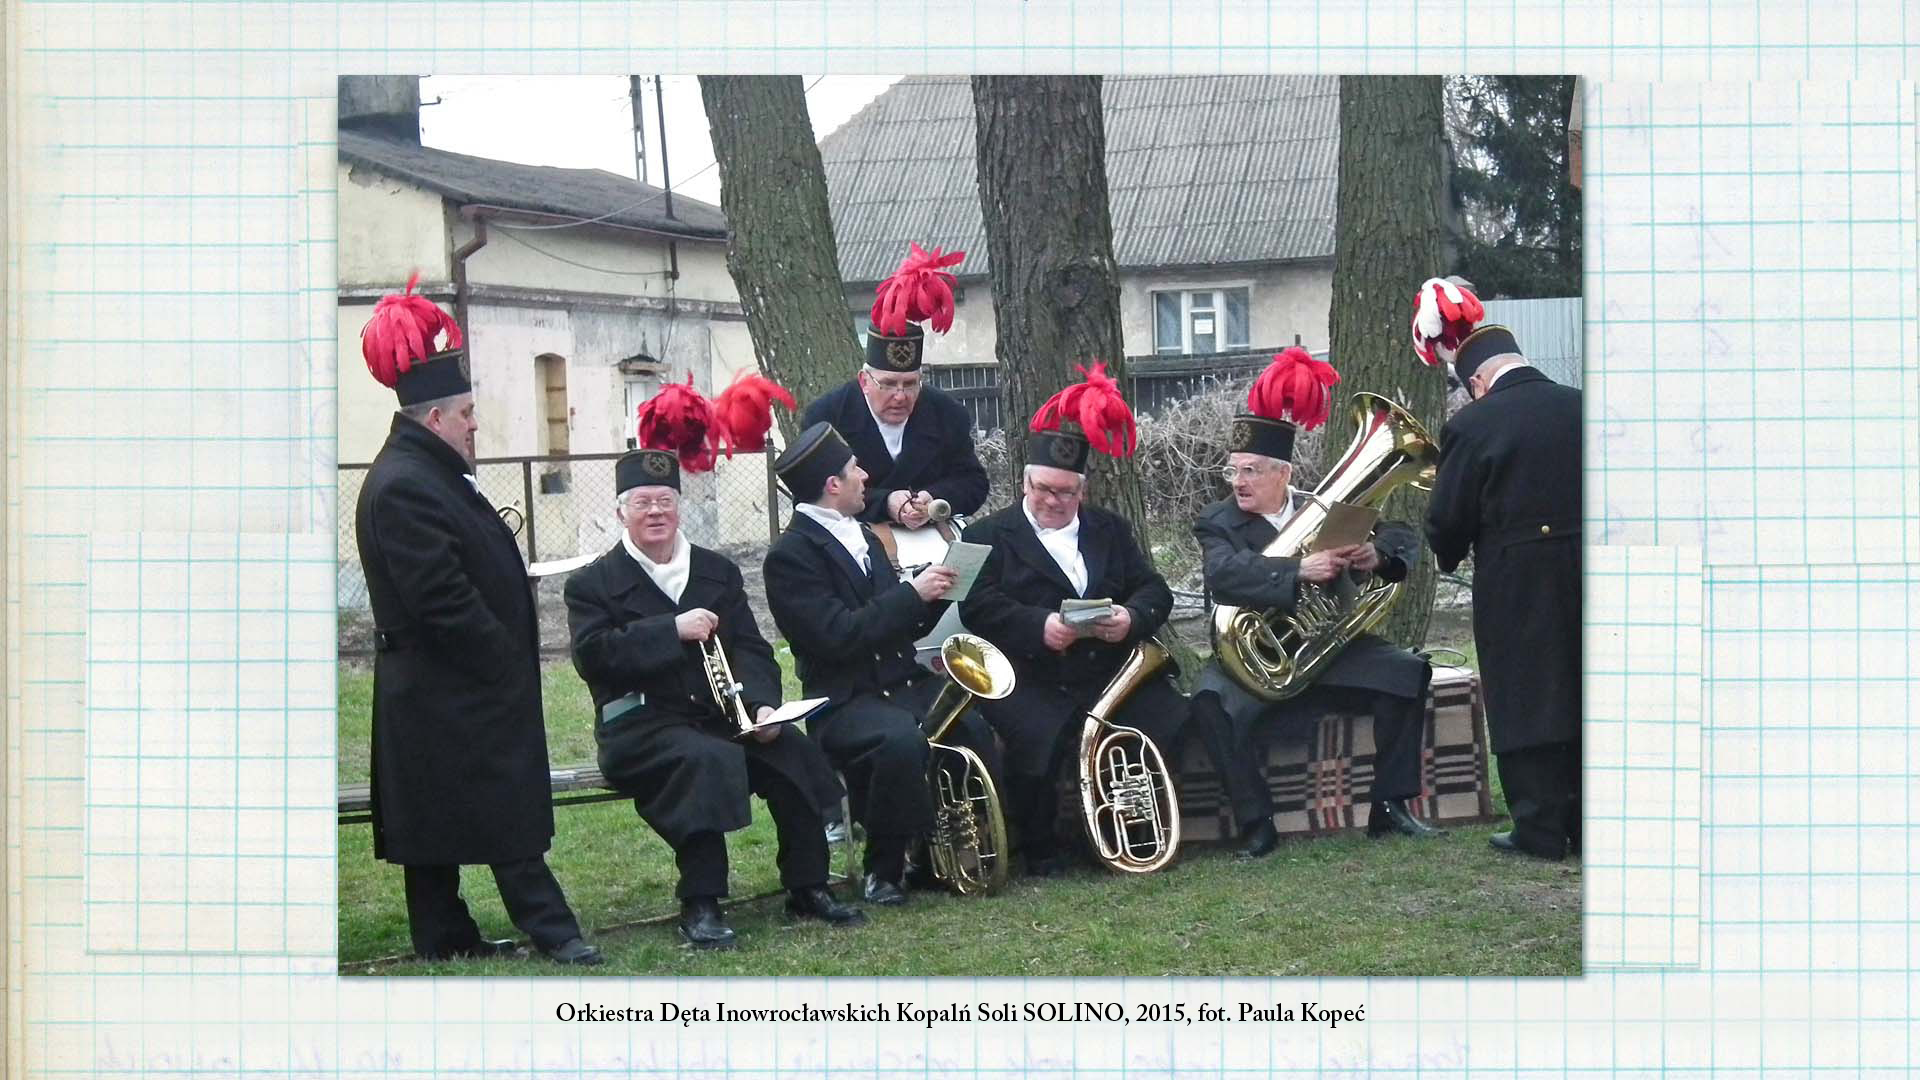 Orkiestra Dęta Inowrocławskich Kopalń Soli SOLINO, 2014, fot. Paula Kopeć Fotografia w kolorze. Grupa mężczyzn z instrumentami w dłoniach pozuje do fotografii. Mają na sobie odświętną odzież. W tle widoczna licznie zgromadzona ludność.